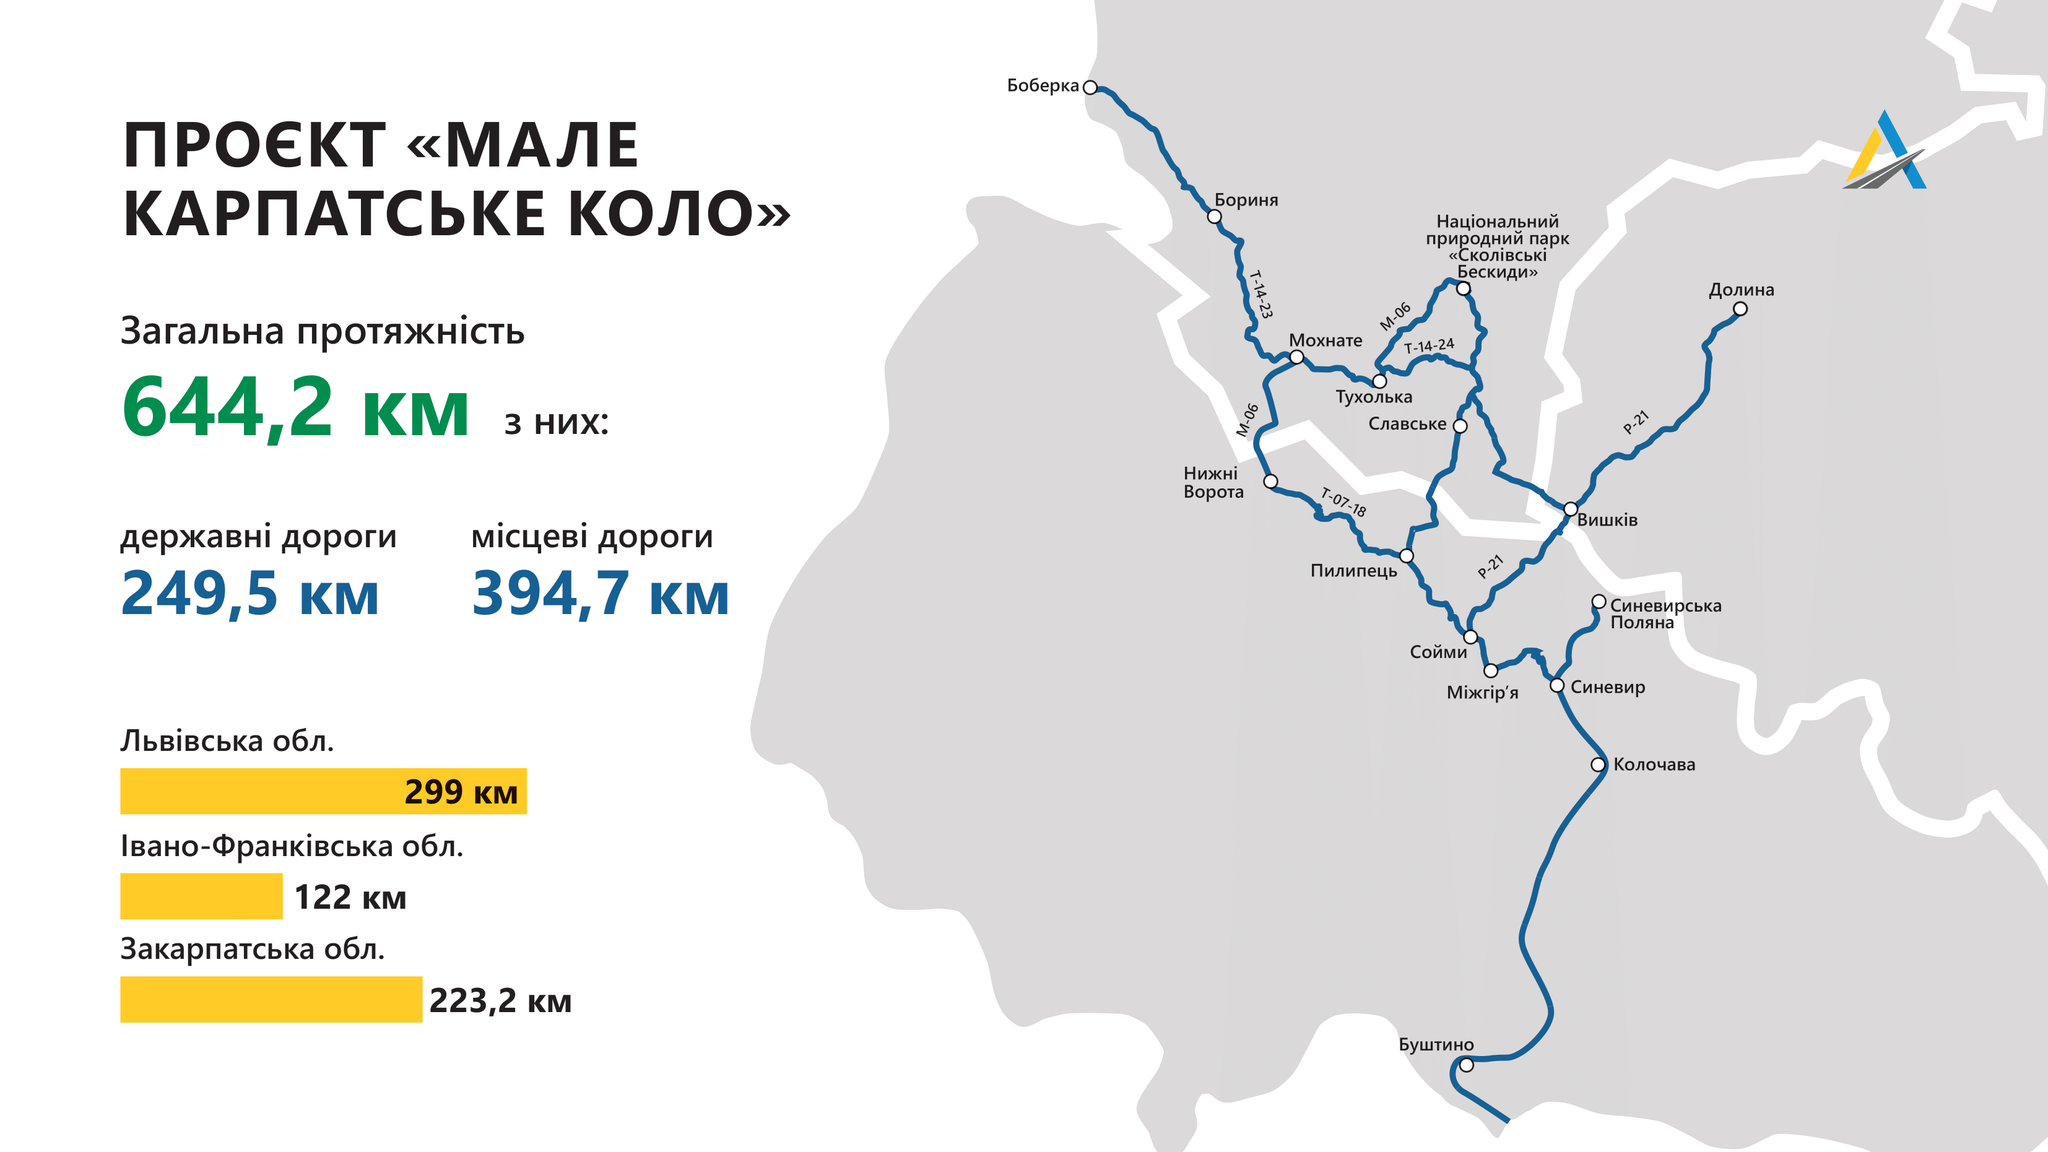 Укравтодор обещает 400 км новых дорог в рамках "Малого Карпатского кольца" в 2022 году